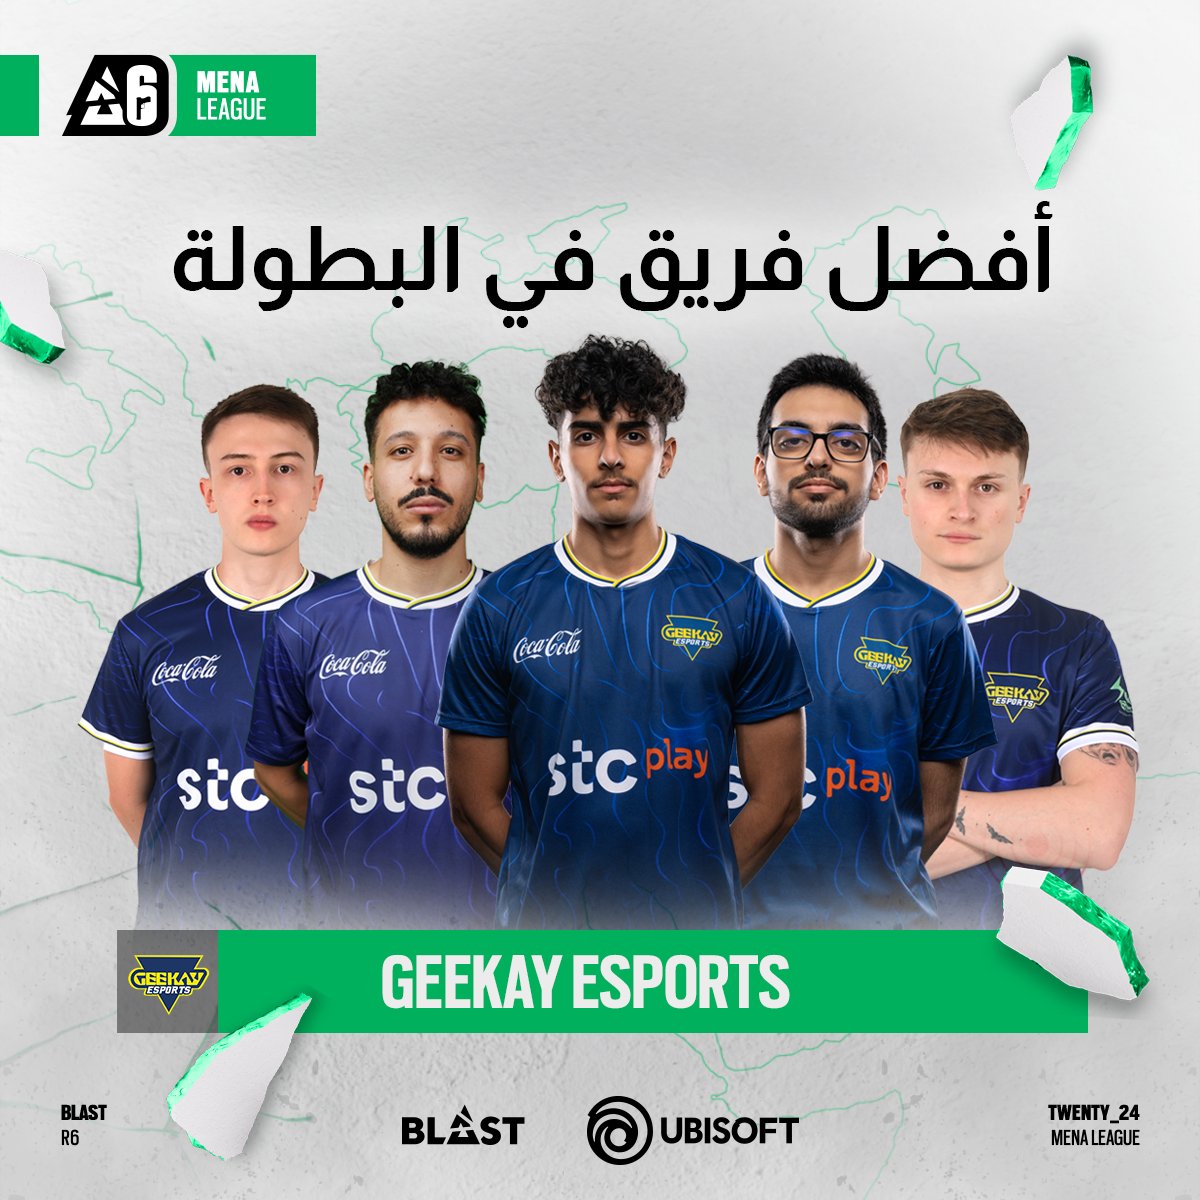 إليكم أفضل فريق من حيث الاحصائيات في بطولة دوري العرب #BlastR6! 💥

@Geekay_Esports